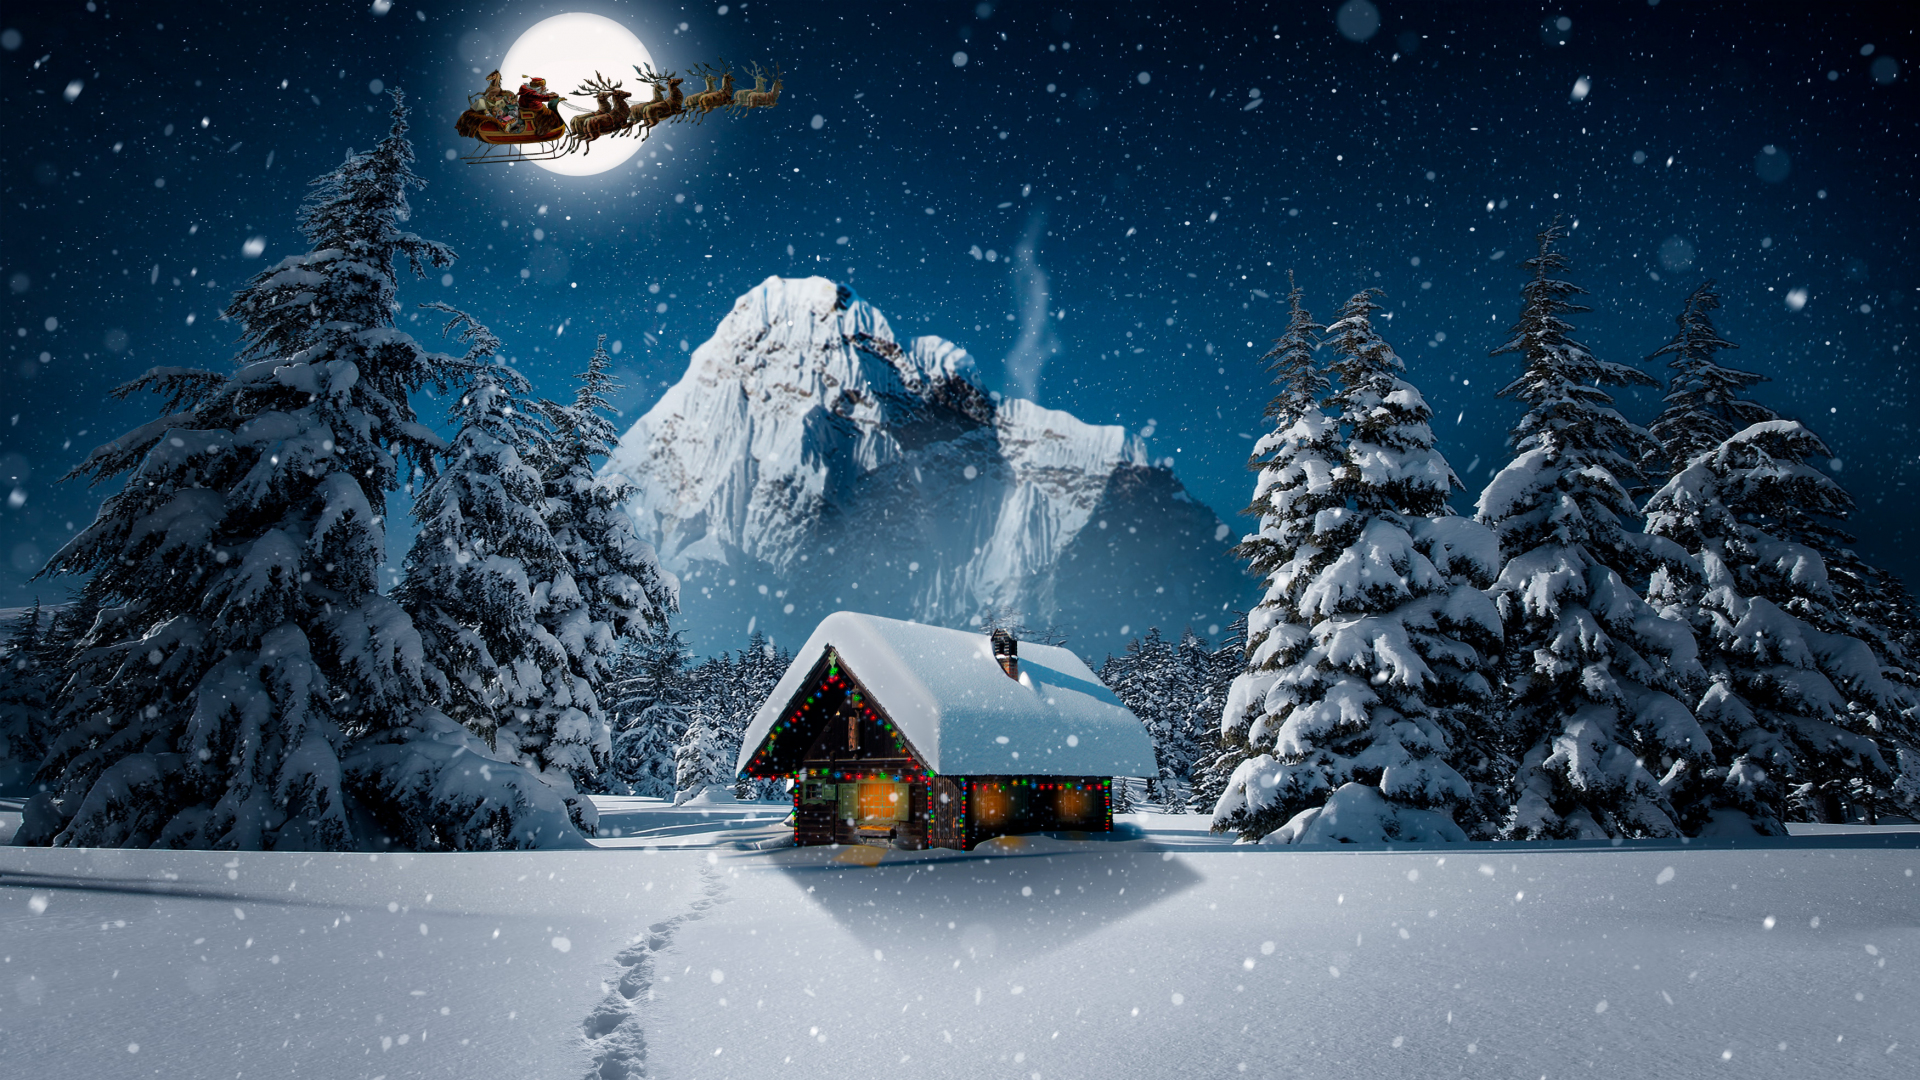 Hình nền tuyết phủ của mùa đông sẽ giúp bạn và gia đình có một mùa Giáng Sinh tuyệt vời. Với những bông tuyết lấp lánh và những hàng cây thênh thang trước cửa nhà bạn, chiếc hình nền này chắc chắn sẽ giúp bạn cảm thấy ấm áp và hạnh phúc cho mùa lễ hội đầy quà tặng.